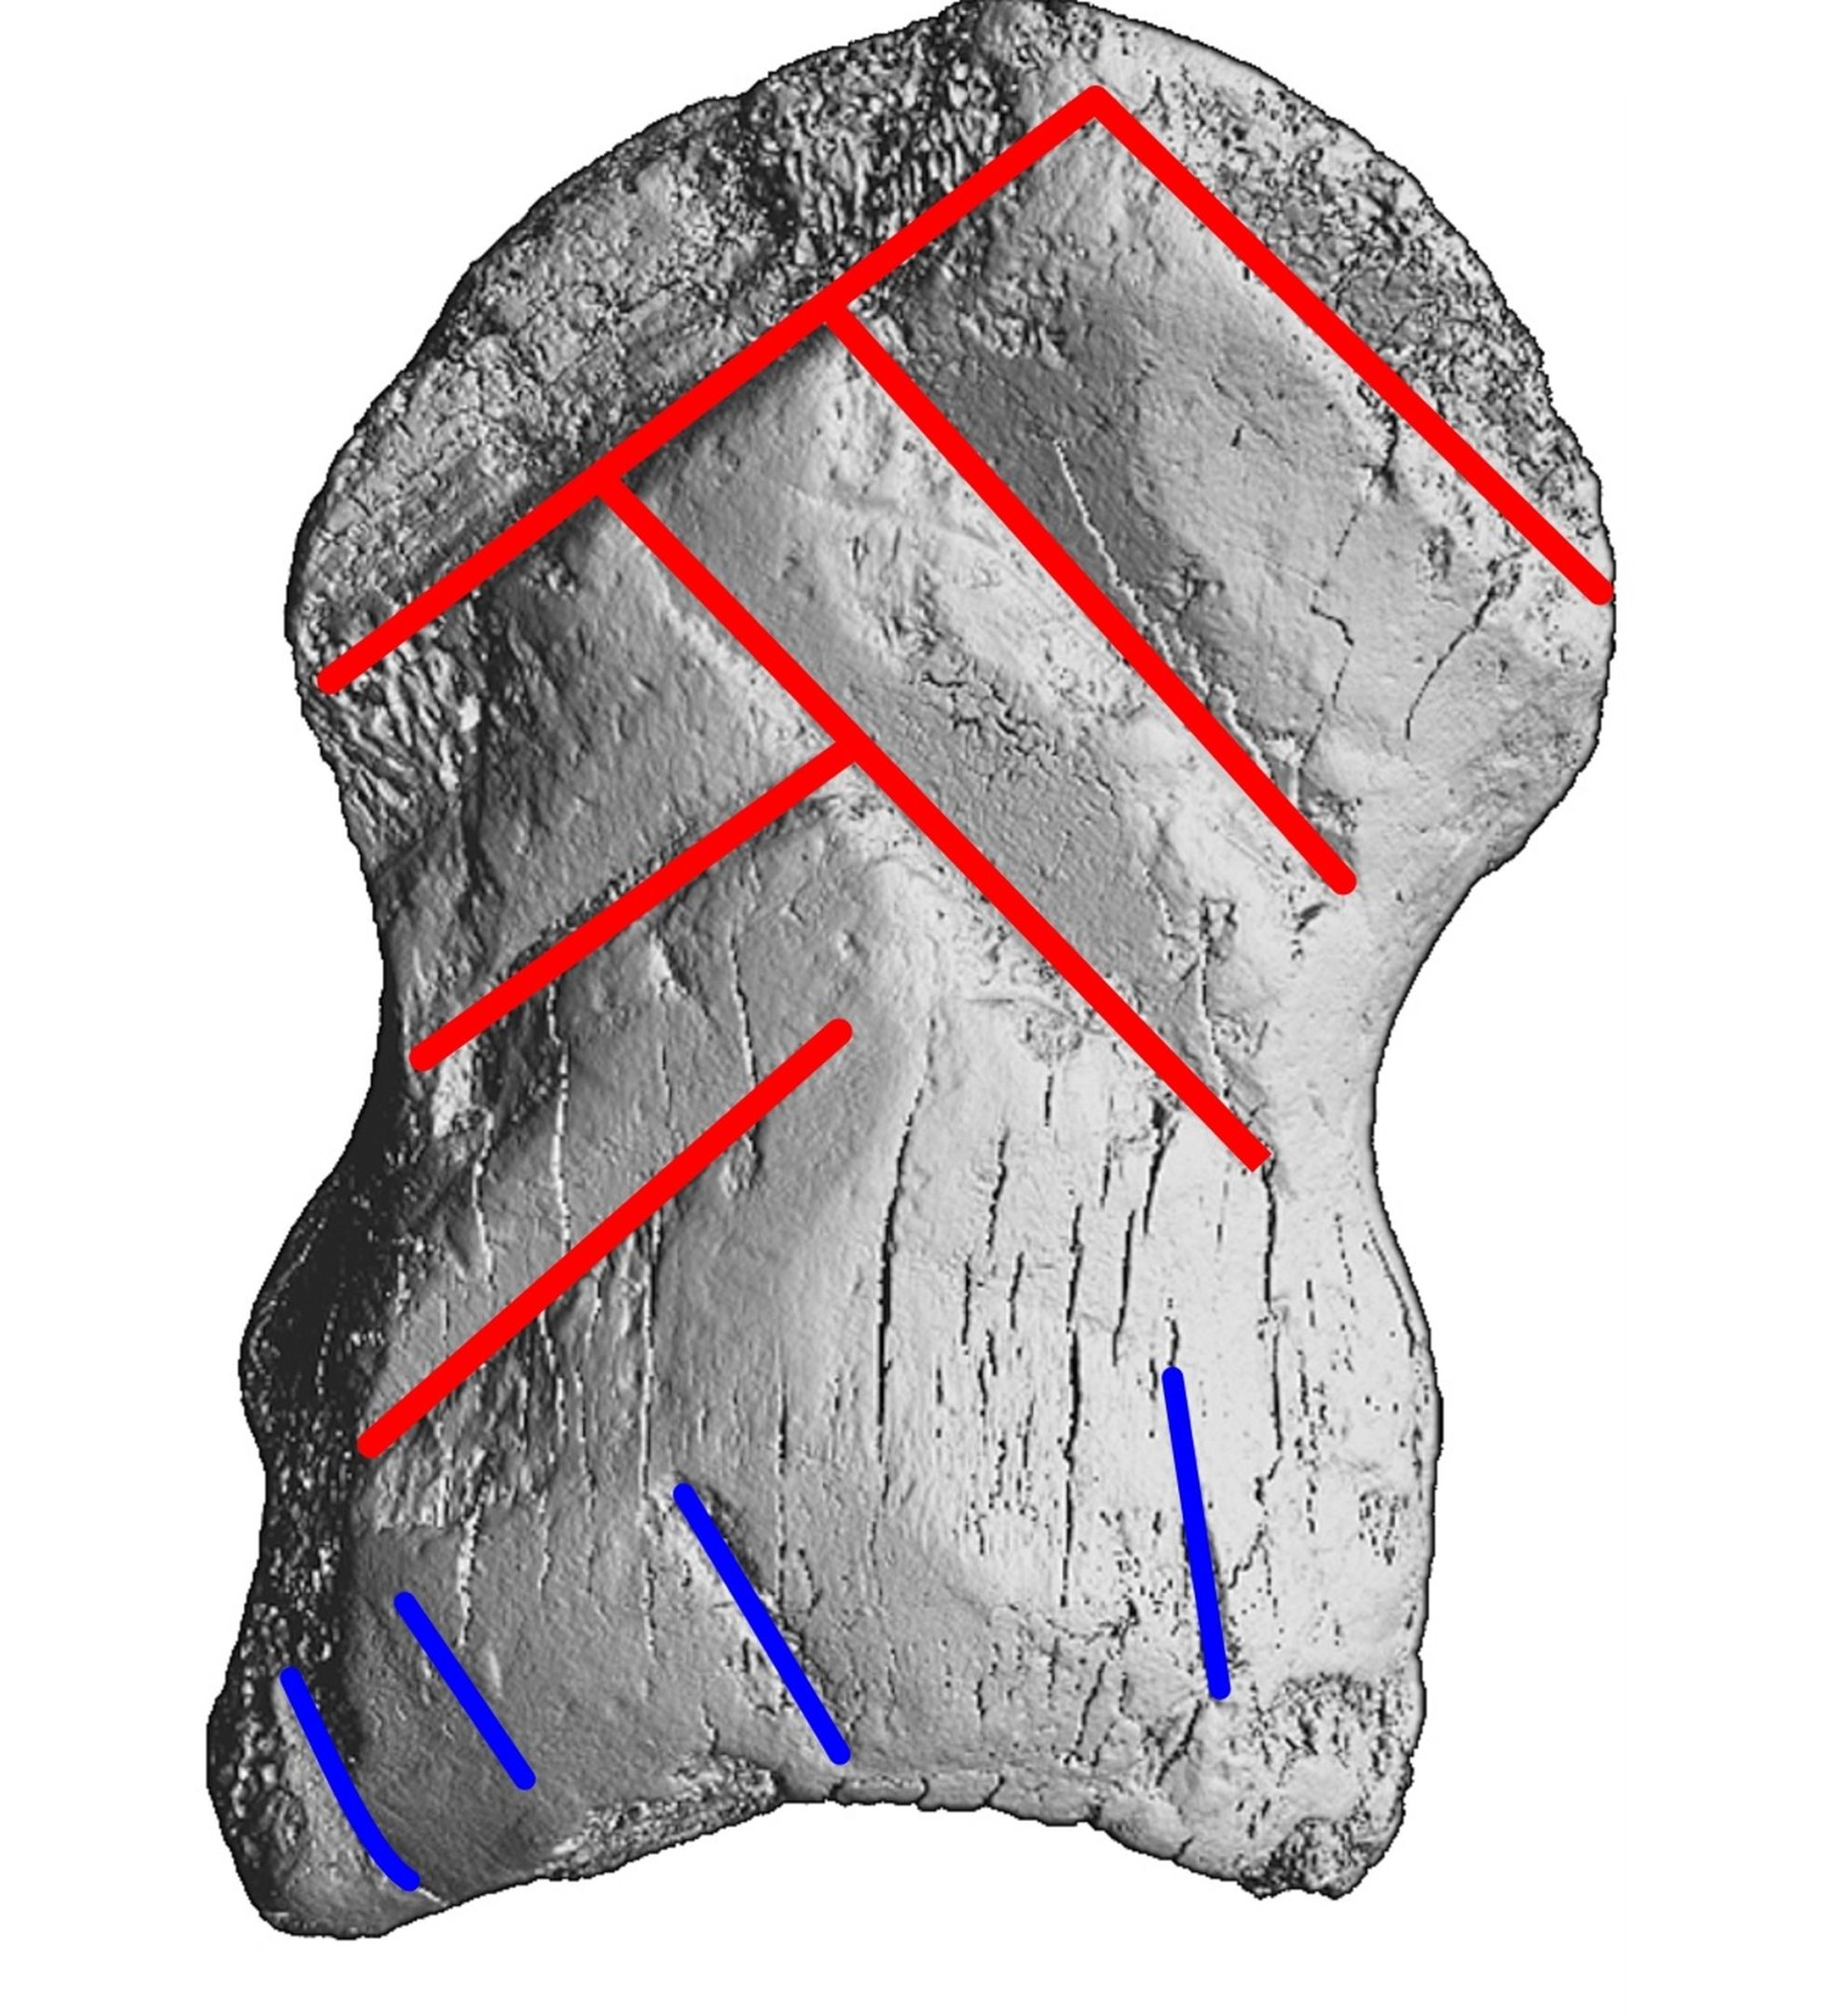 Este patrón geométrico probablemente fue entendido como un mensaje por los neandertales.